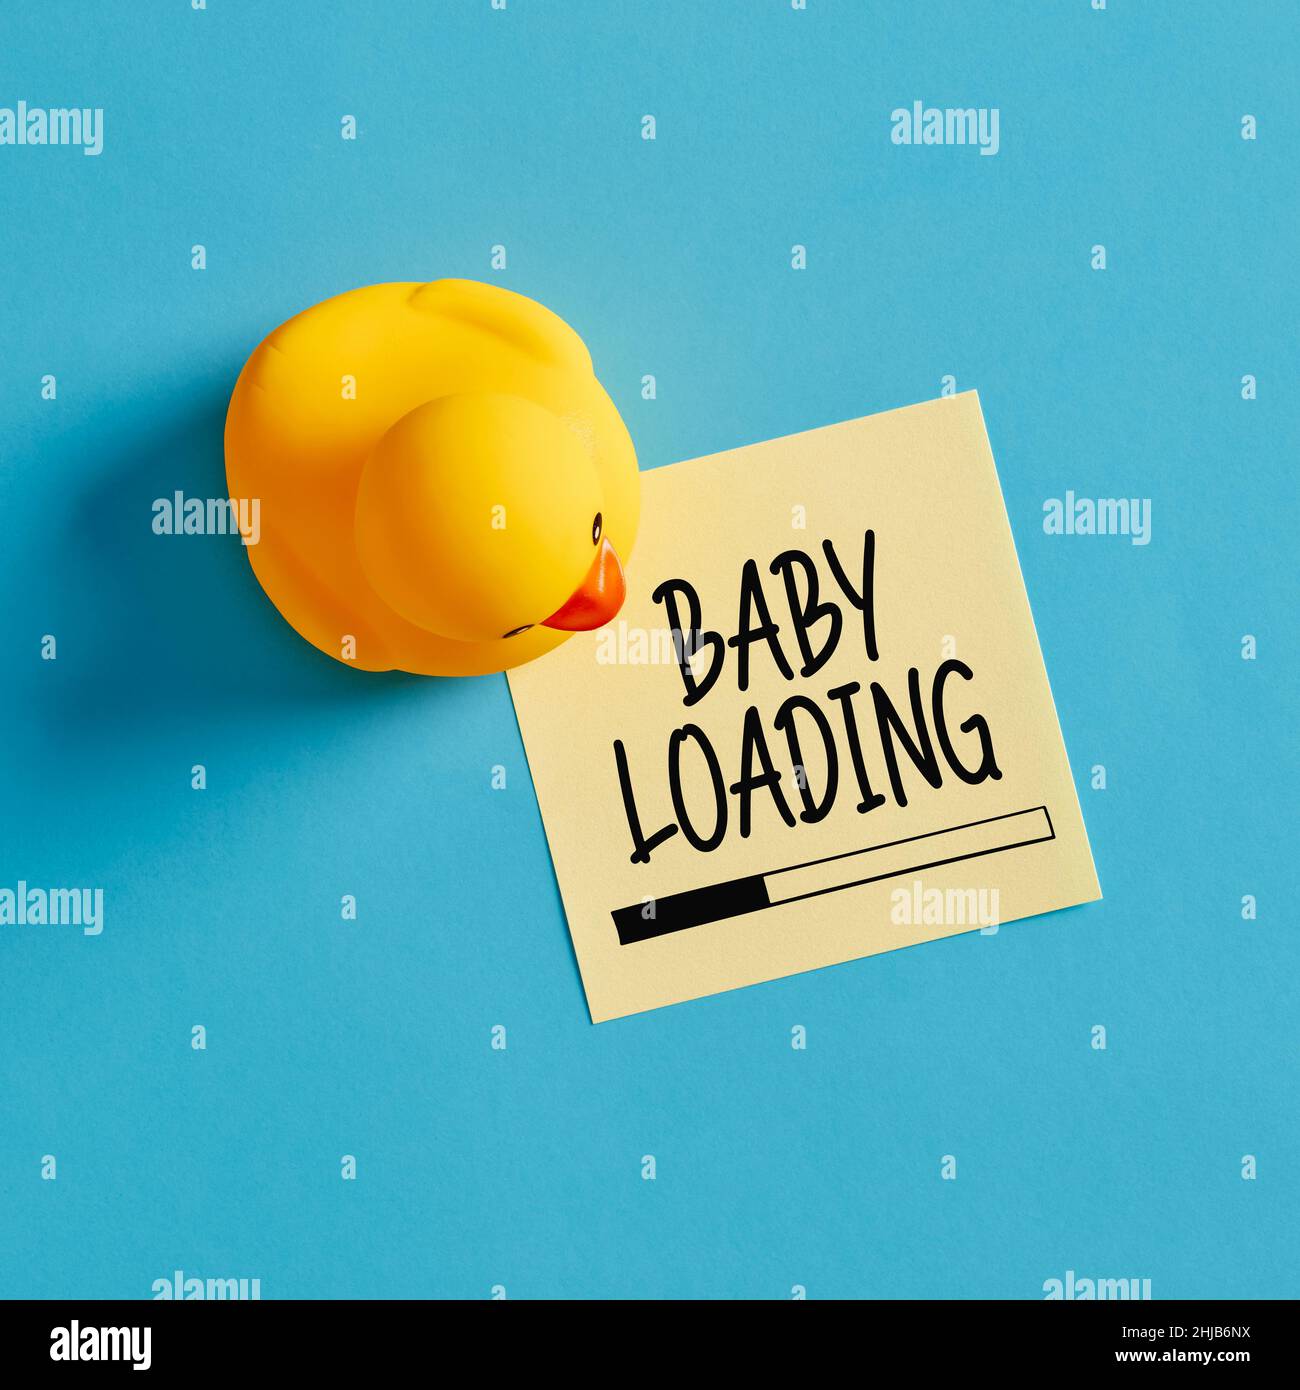 Babyladung Nachricht geschrieben auf einem gelben Haftnotiz mit einem Gummi Ente Spielzeug auf blauem Hintergrund. Stockfoto